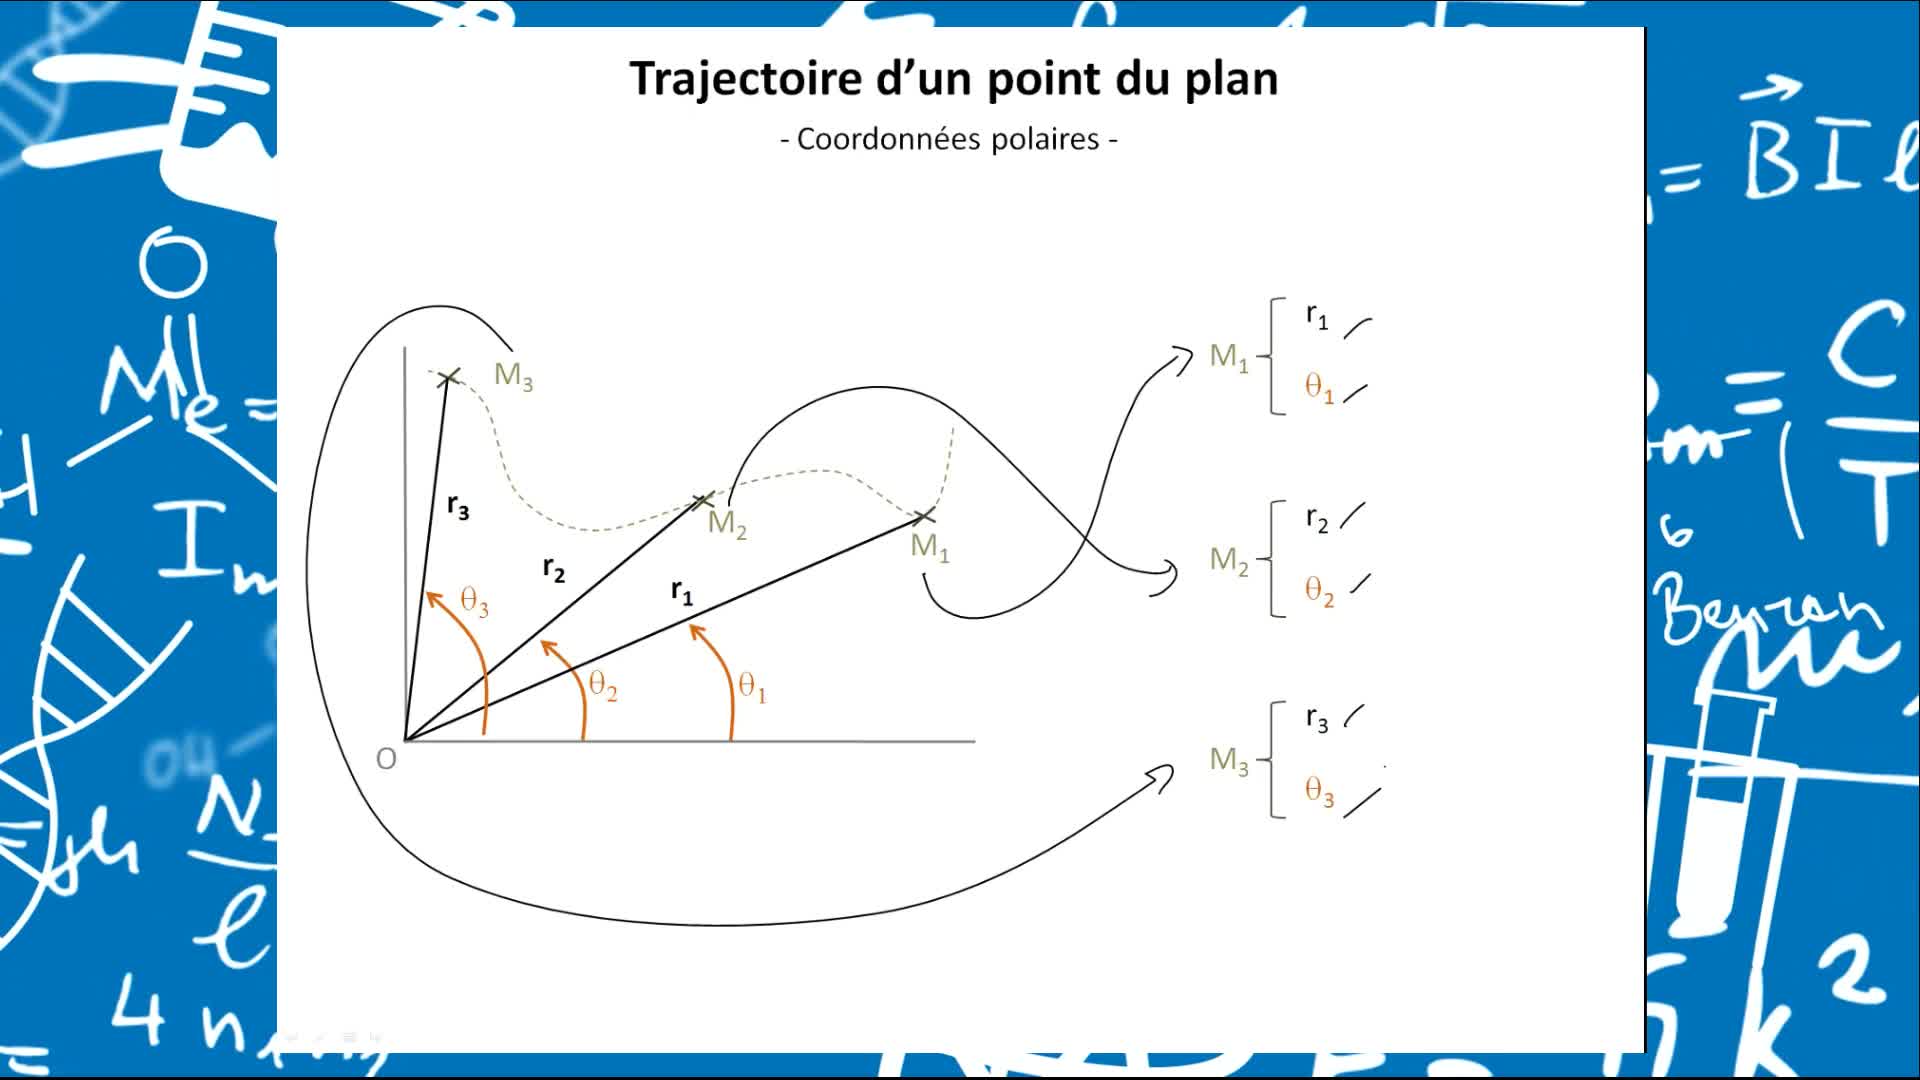 Remediation - Vecteurs position, vitesses et accélérations décrits en coordonnées cartésiennes et polaires - VIDEO 06-introduction des coordonnées polaires